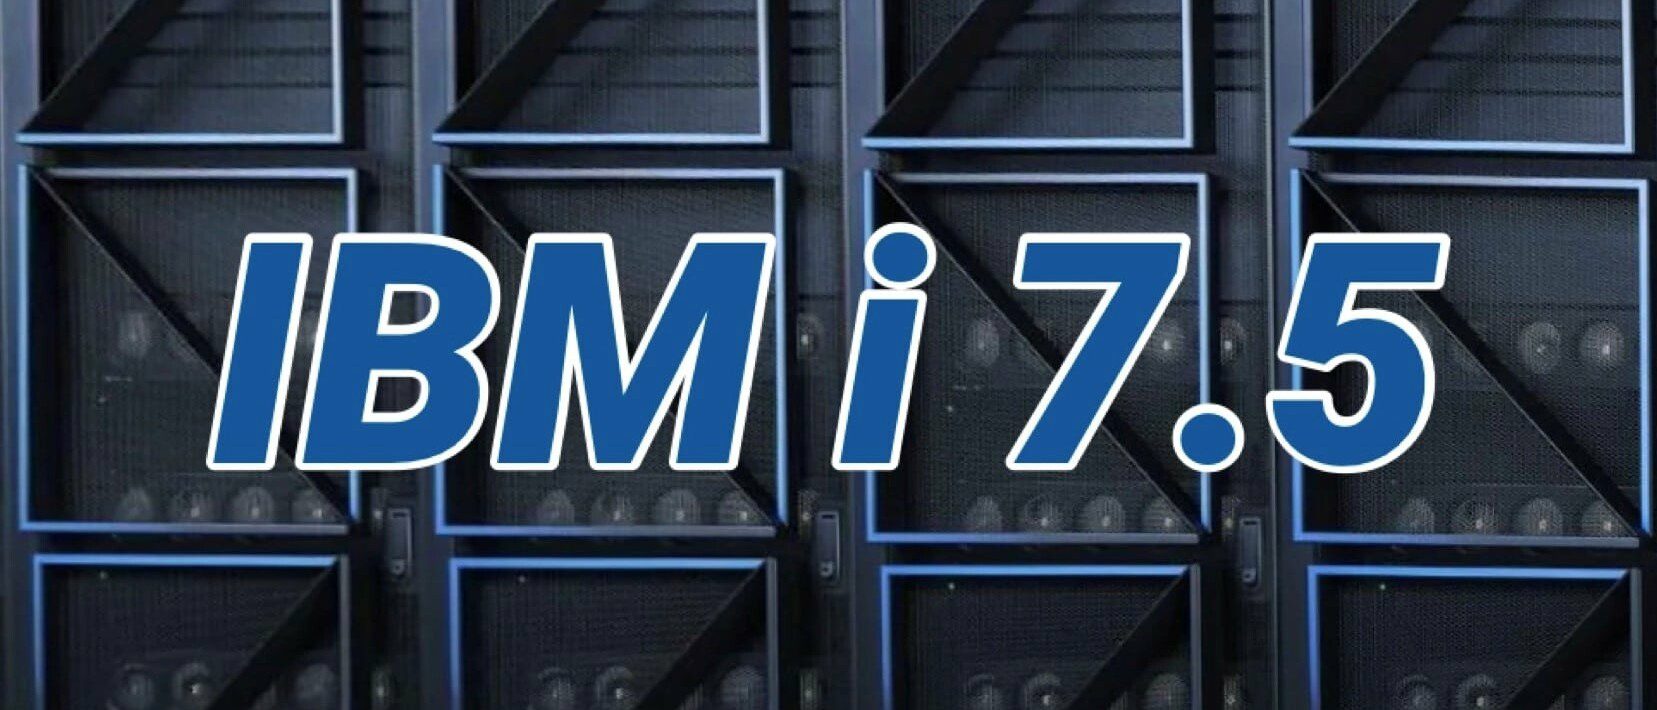 IBM i 7.5